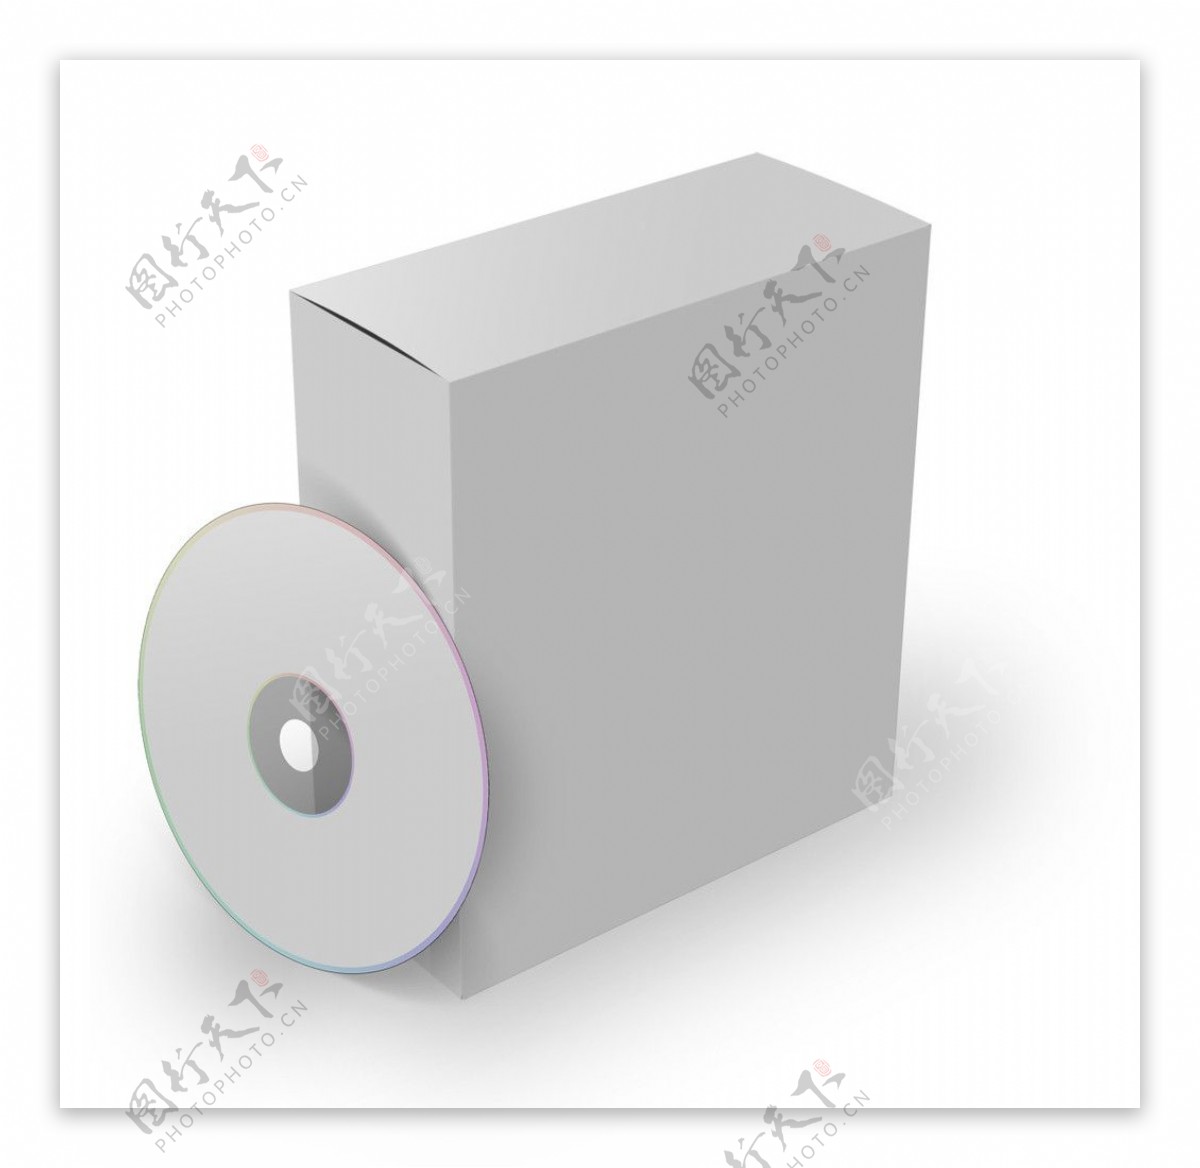 cddvd包装光盘分层源文件图片